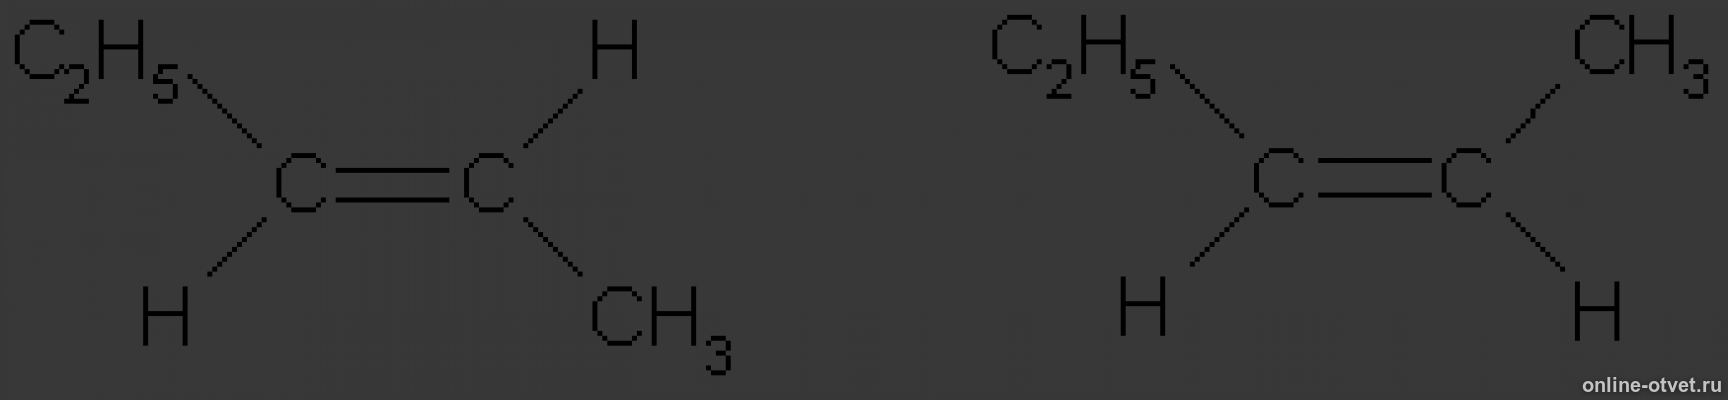 Цис пентен 2. Цис пентен 2 формула. Транс пентен 2 структурная формула. 3 3 Диметил бутен 1 цис и транс изомерия. Пентен 2 этилен